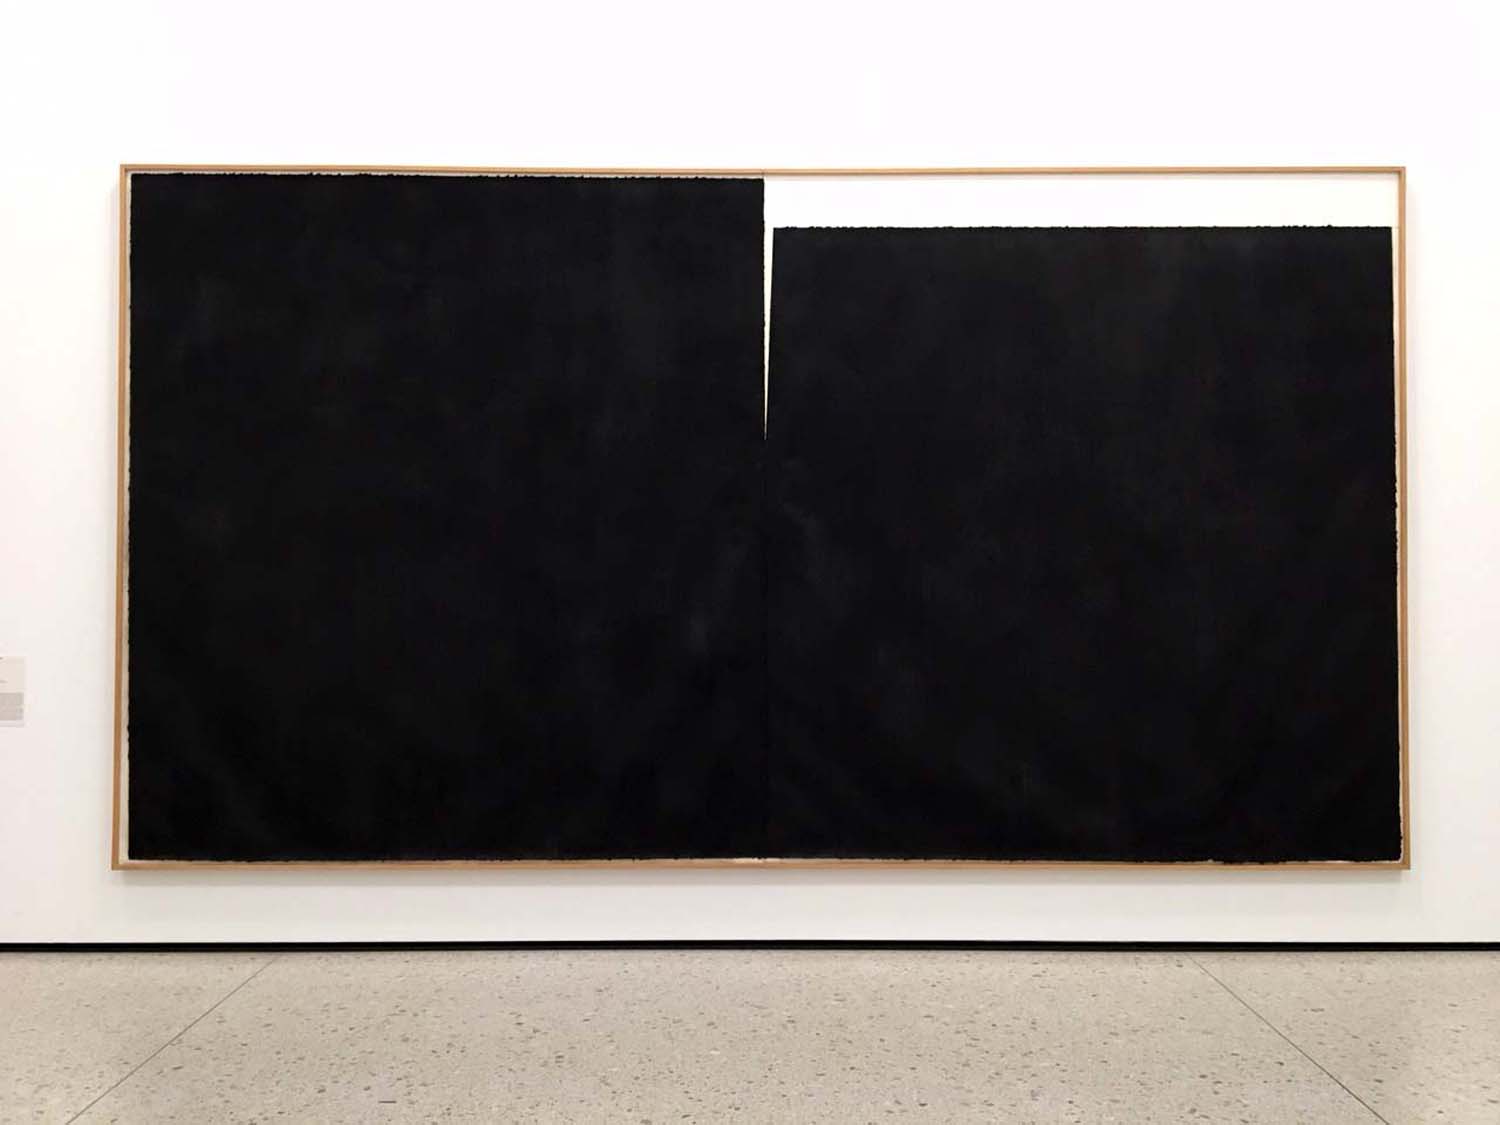  Richard Serra, Inca, 1989 